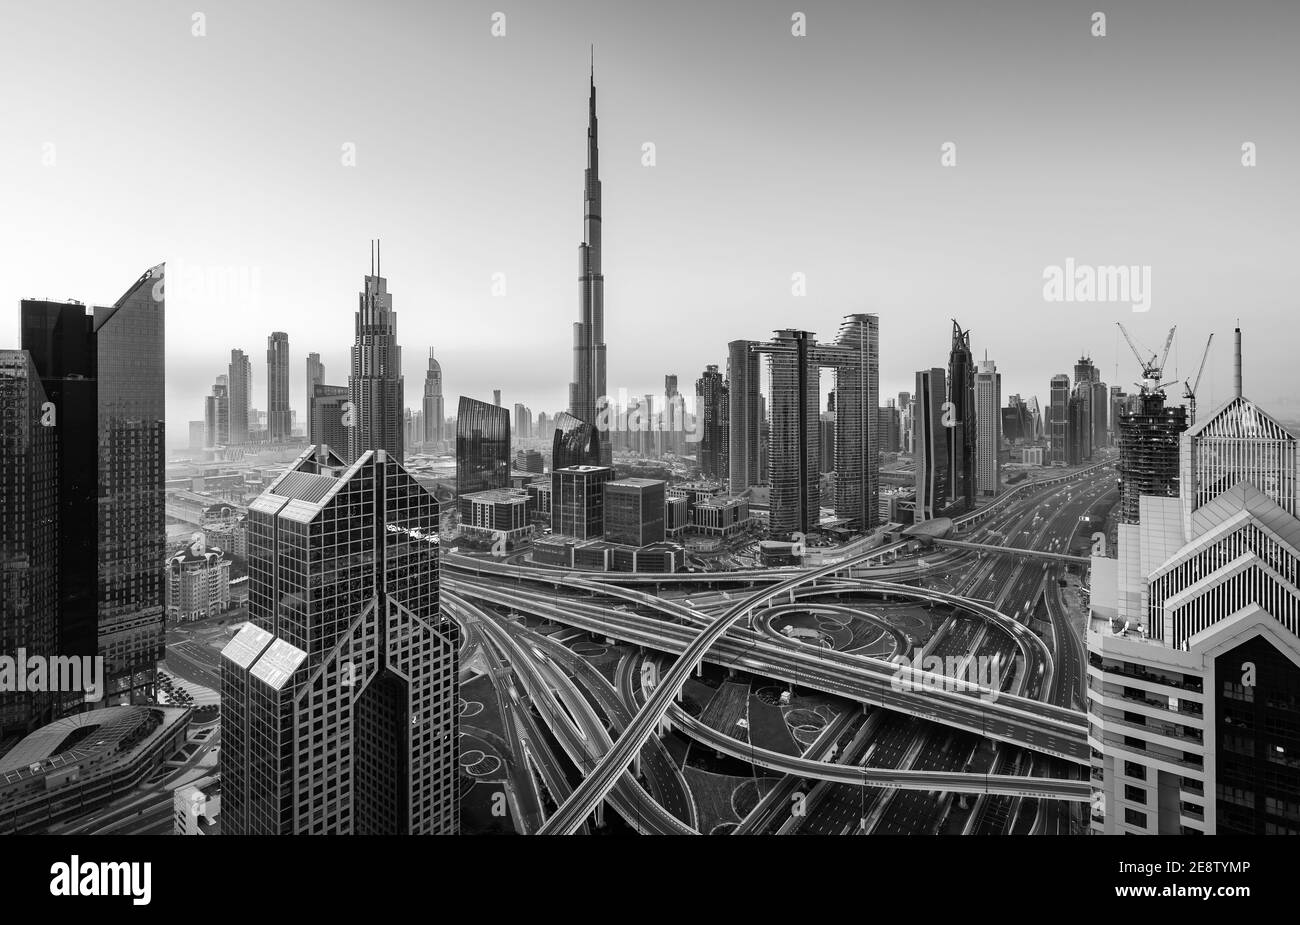 Ver en modernos rascacielos y noche concurrida autopistas de lujo de la ciudad de Dubai, Dubai, Emiratos Árabes Unidos Foto de stock